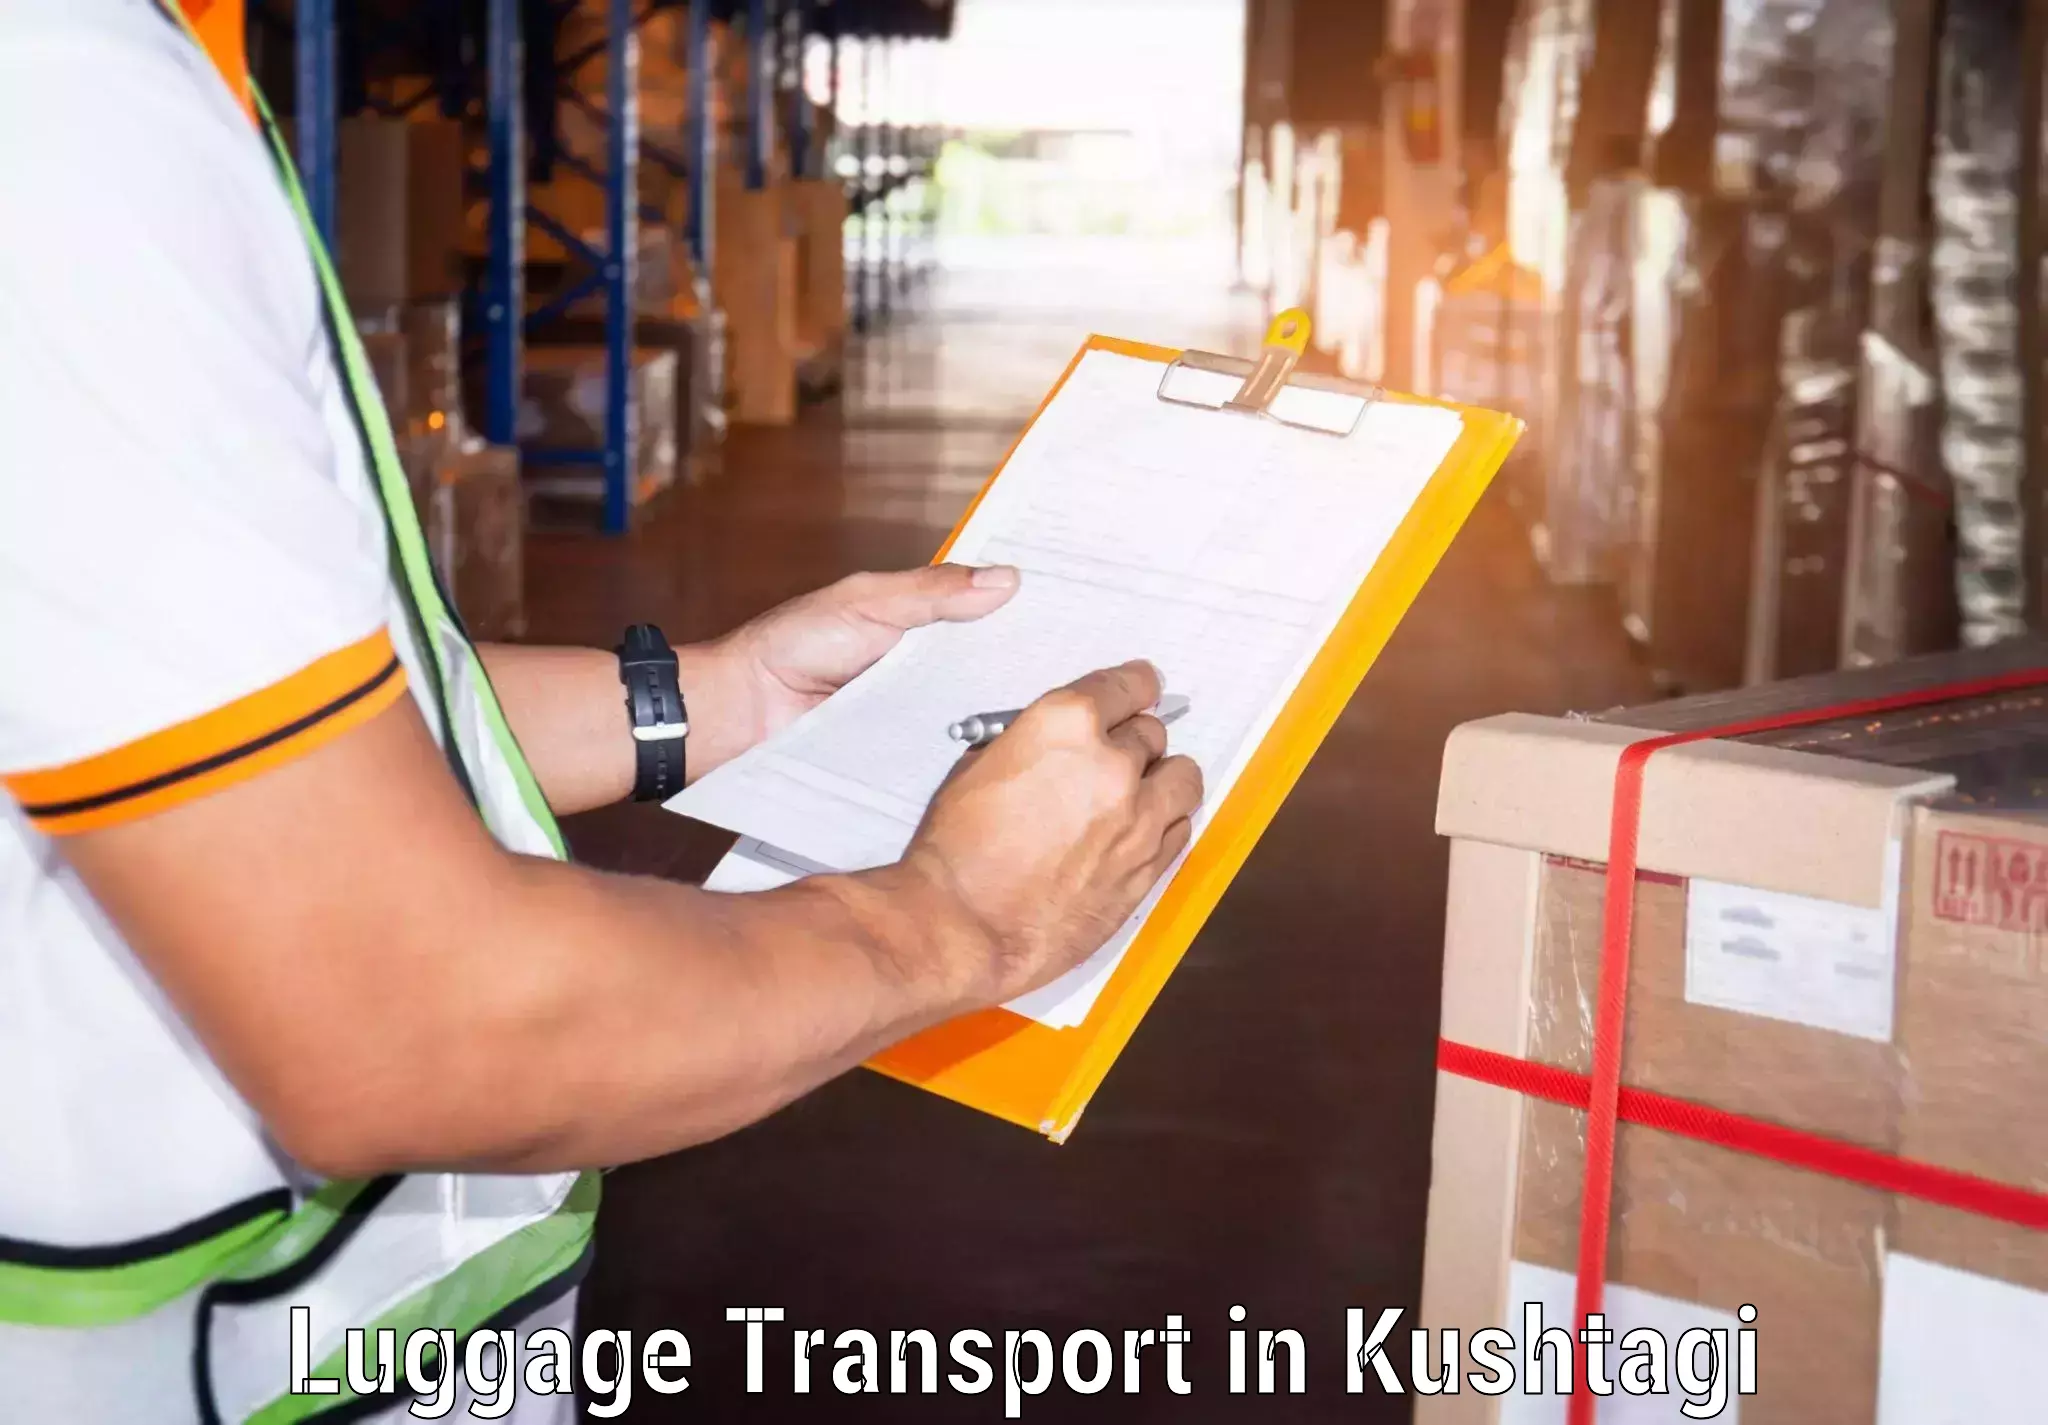 Luggage delivery logistics in Kushtagi